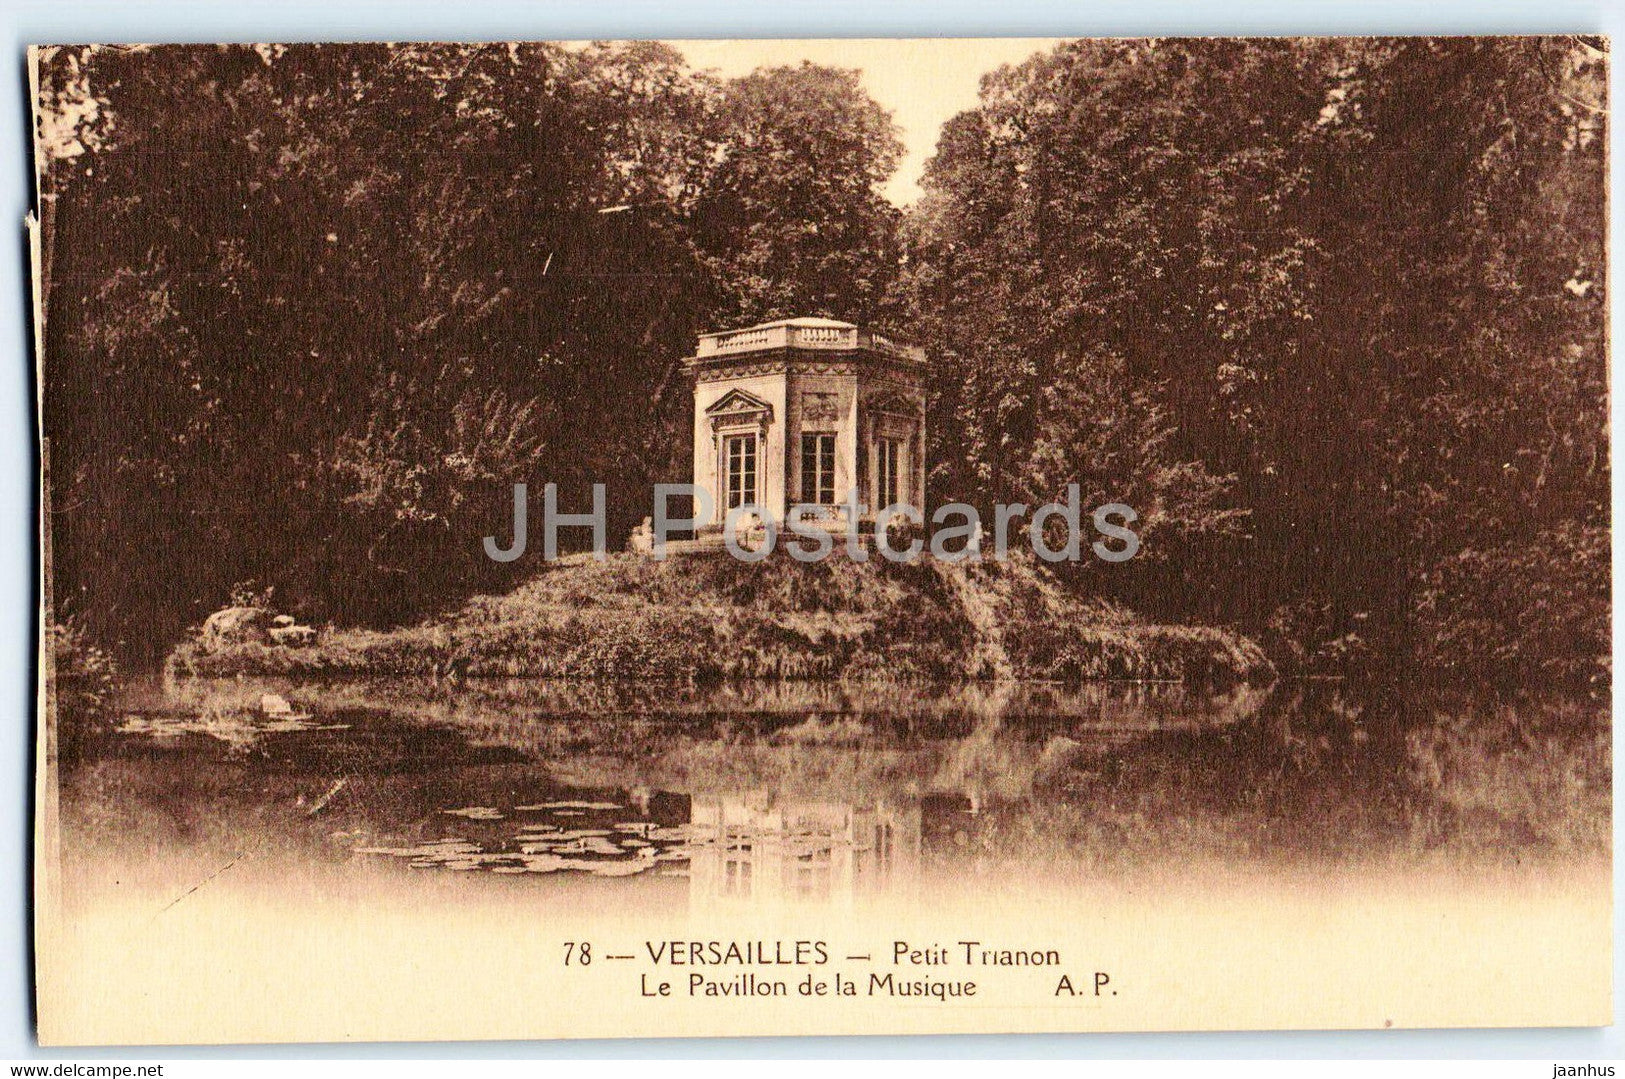 Versailles - Petit Trianon - Le Pavillon de la Musique - 78 - old postcard - France - unused - JH Postcards